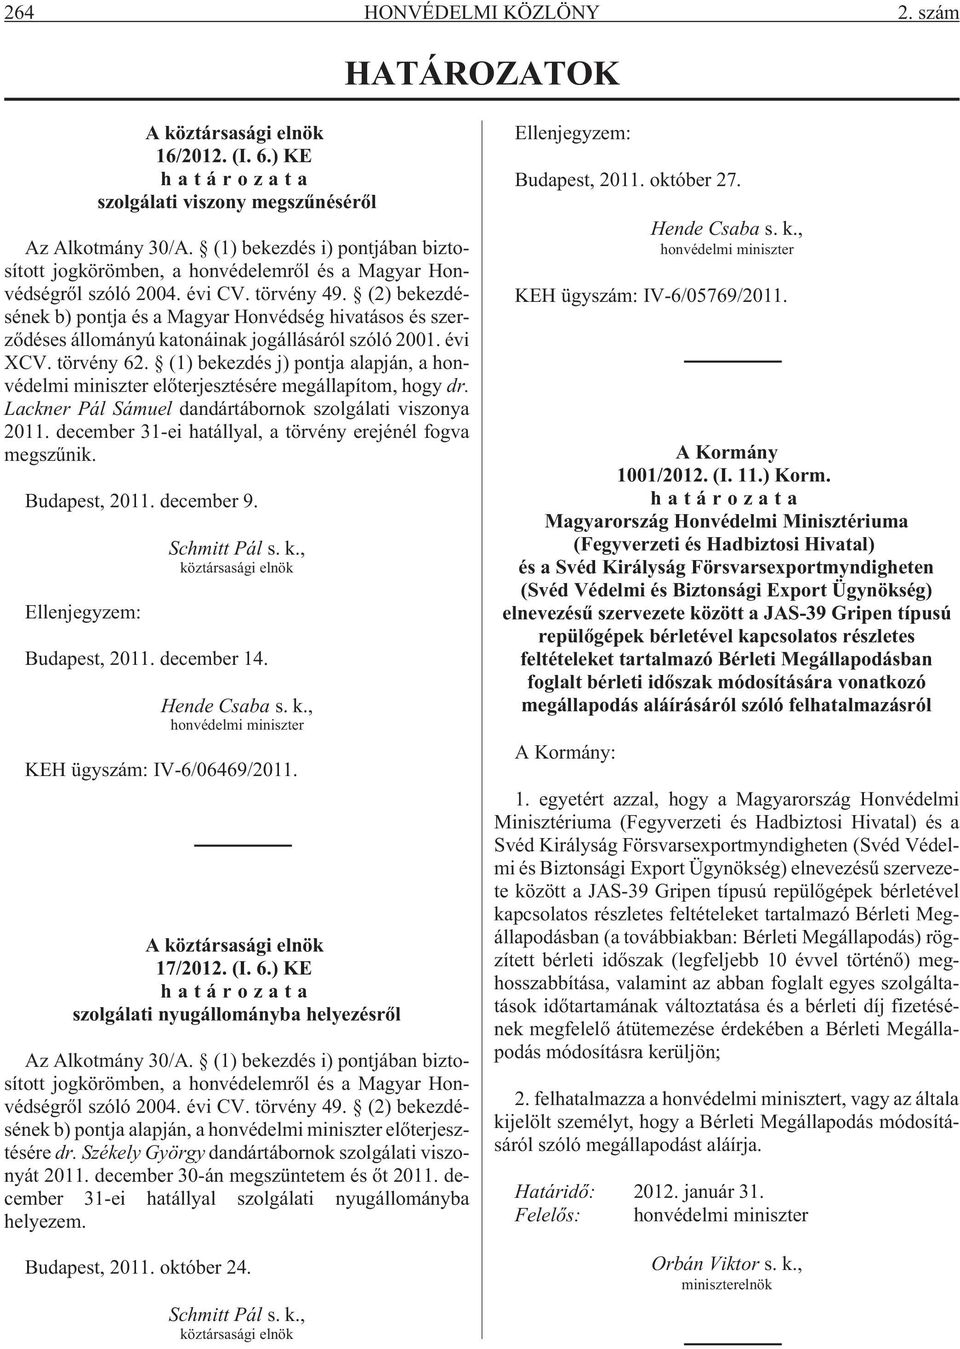 (2) bekezdésének b) pontja és a Magyar Honvédség hivatásos és szerzõdéses állományú katonáinak jogállásáról szóló 2001. évi XCV. törvény 62.